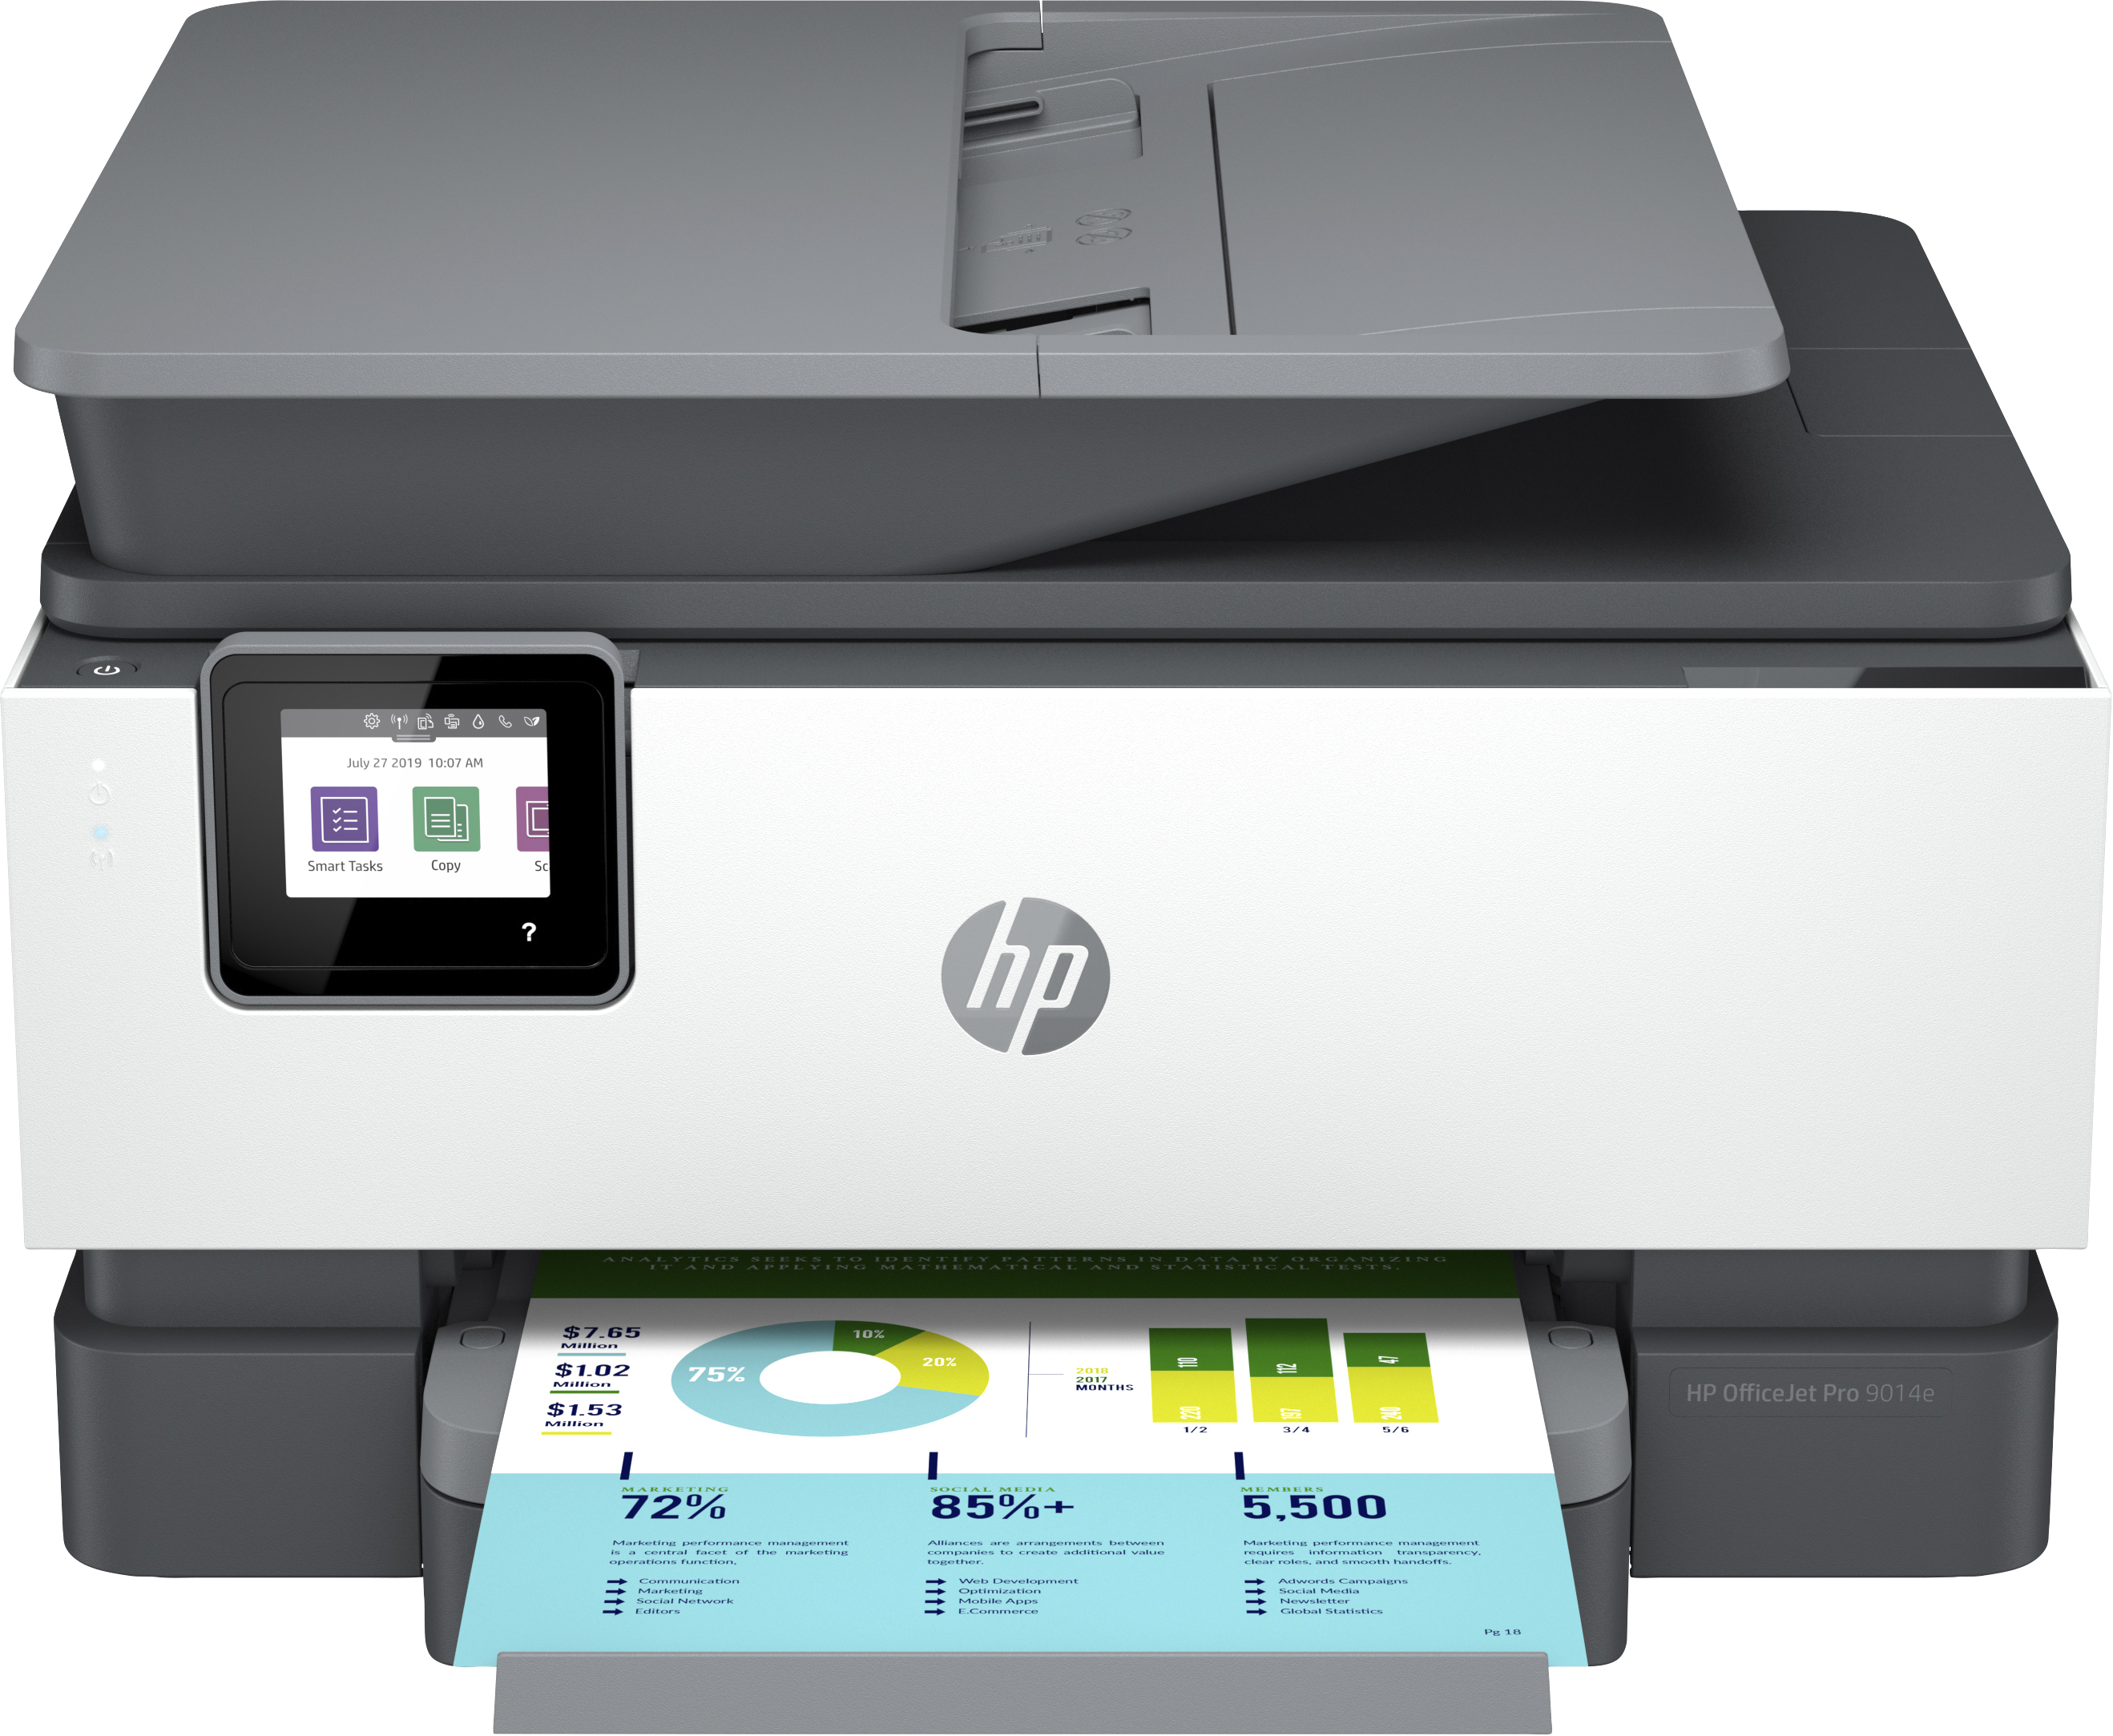 Image of HP OfficeJet Pro Stampante multifunzione HP 9014e, Colore, Stampante per Piccoli uffici, Stampa, copia, scansione, fax, HP+; Idoneo per HP Instant Ink; alimentatore automatico di documenti; Stampa fronte/retro